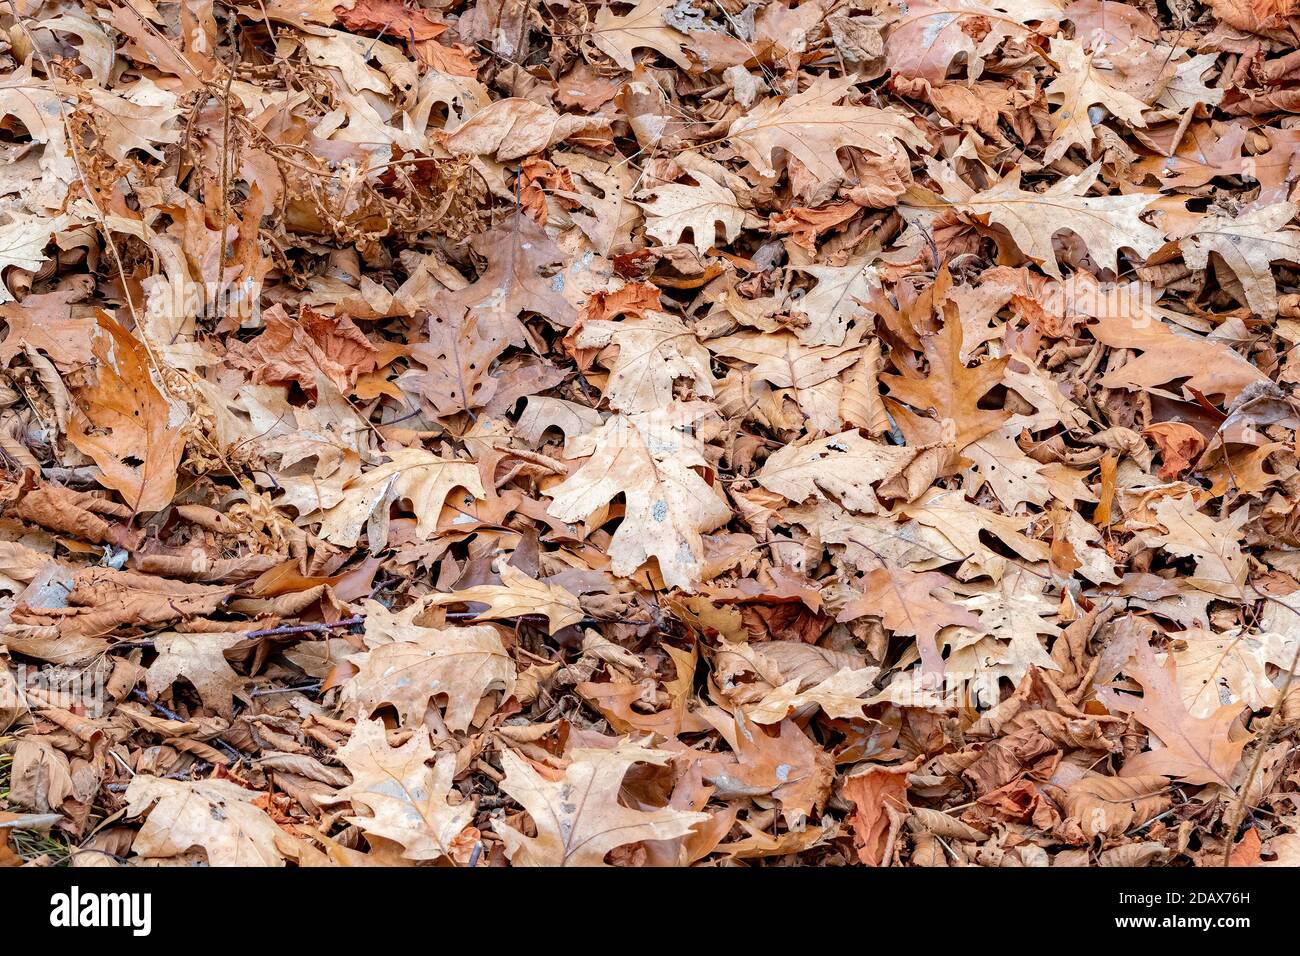 Un tas de feuilles de chêne brun sec couché sur le sol. Les feuilles remplissent complètement le cadre. Banque D'Images